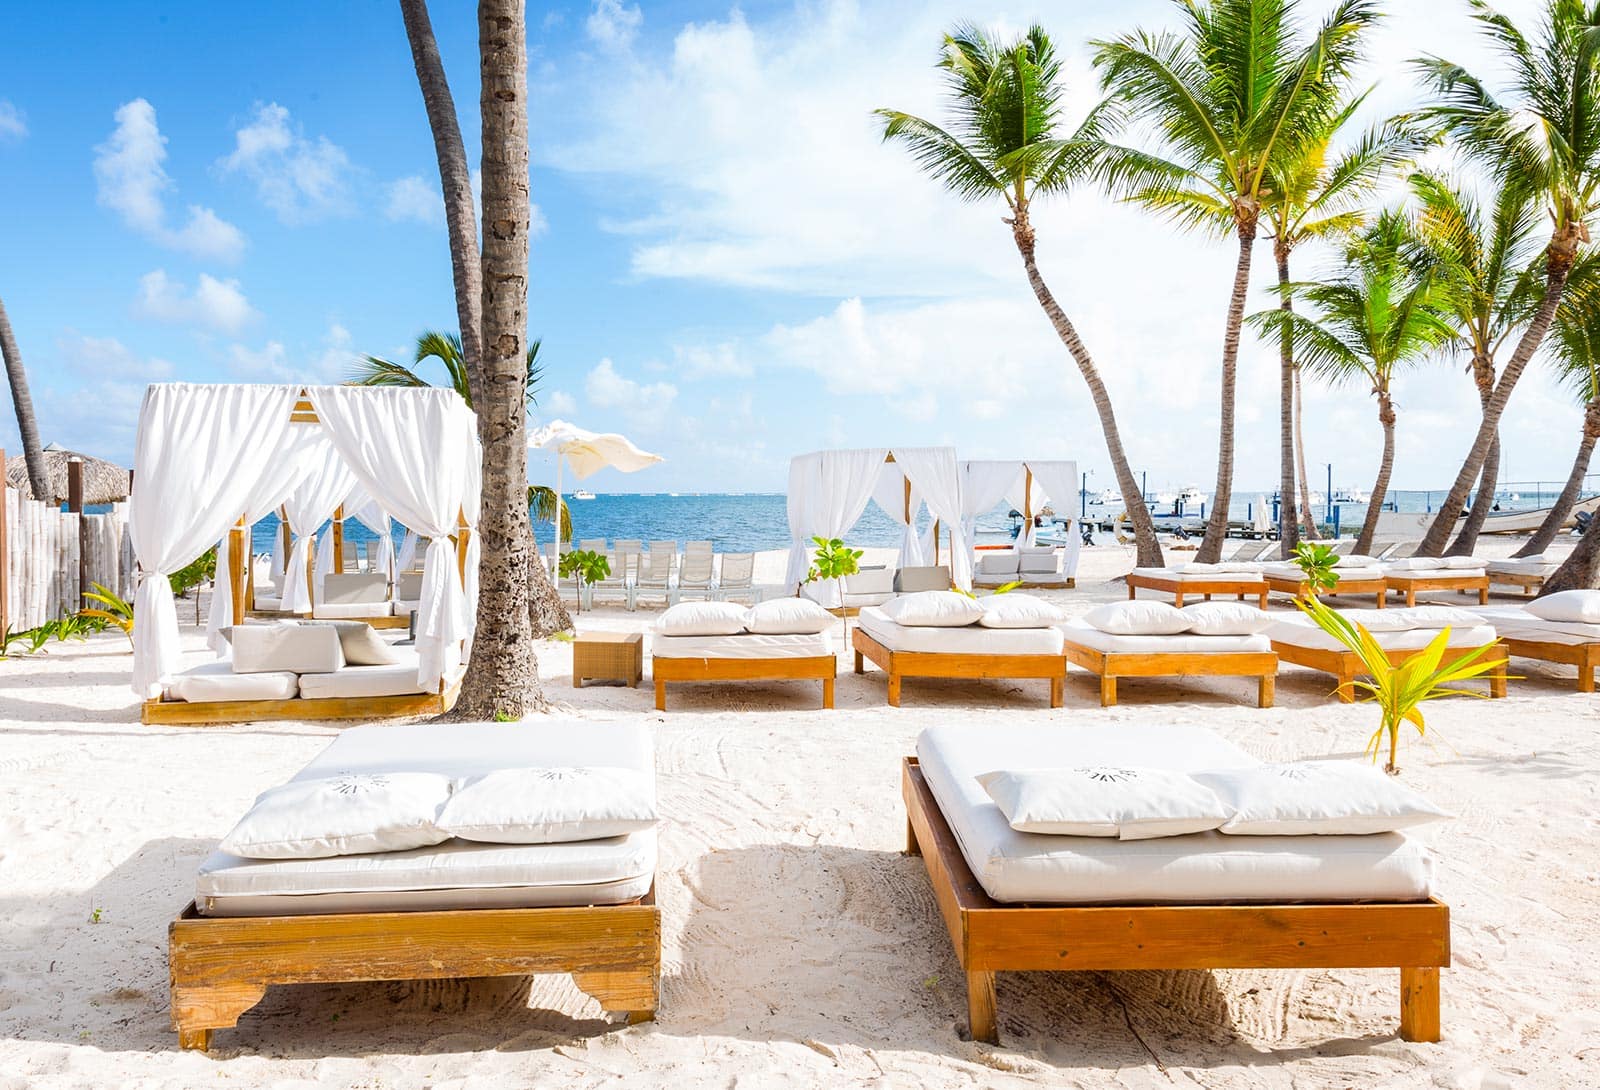 Hotel at Punta Cana Beach | Hotel at Playa Cabeza de Toro